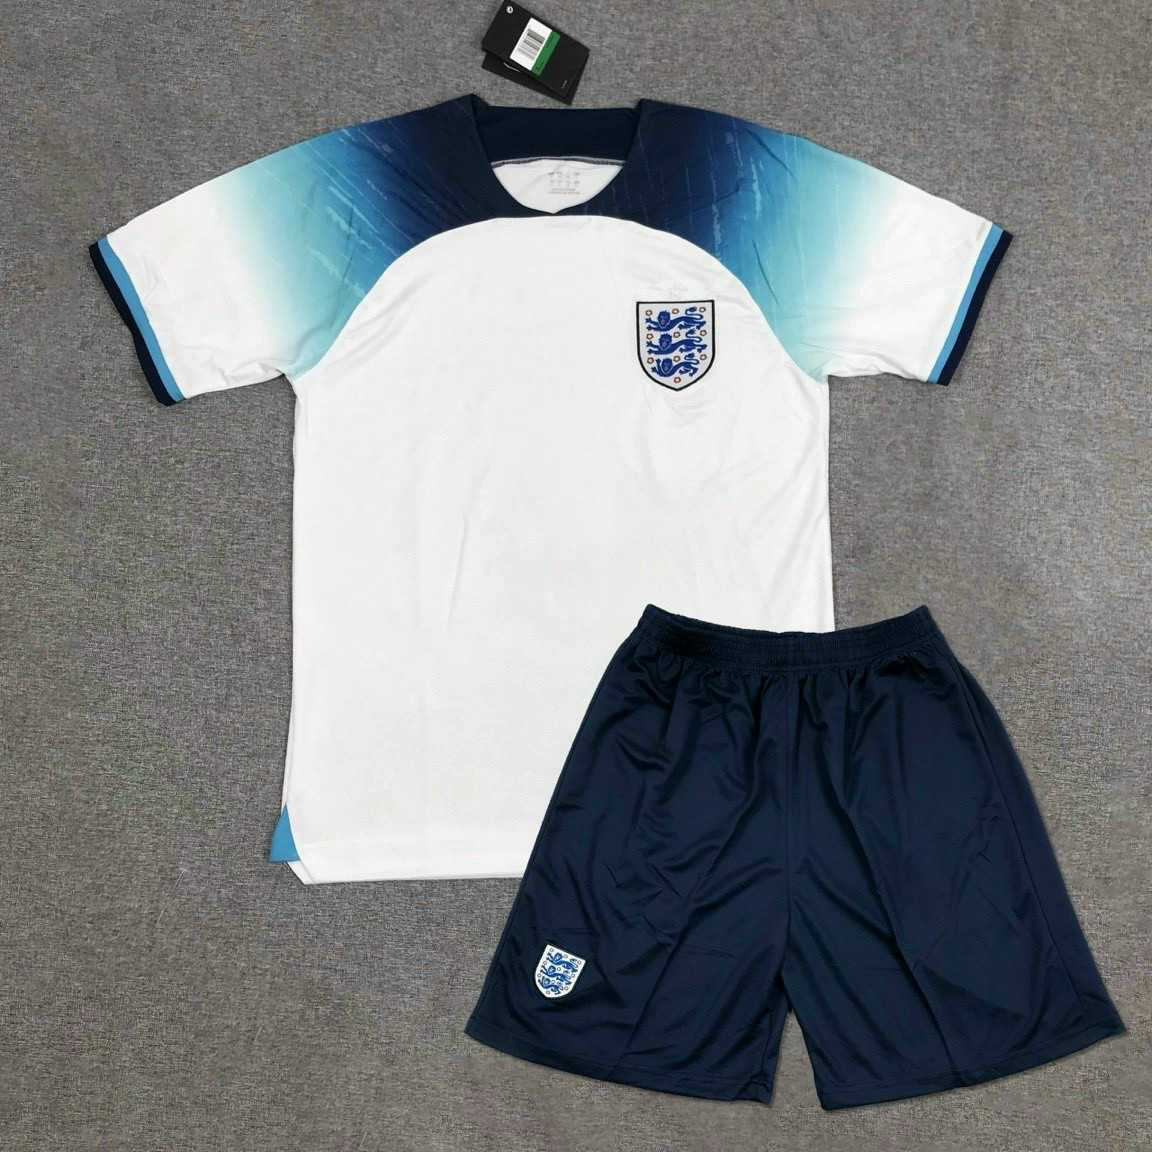 Bộ quần áo đá banh đội tuyển bóng đá hoành gia anh england màu trắng xanh mới nhất mùa world cup 2022 2023 vải thái logo thêu 3